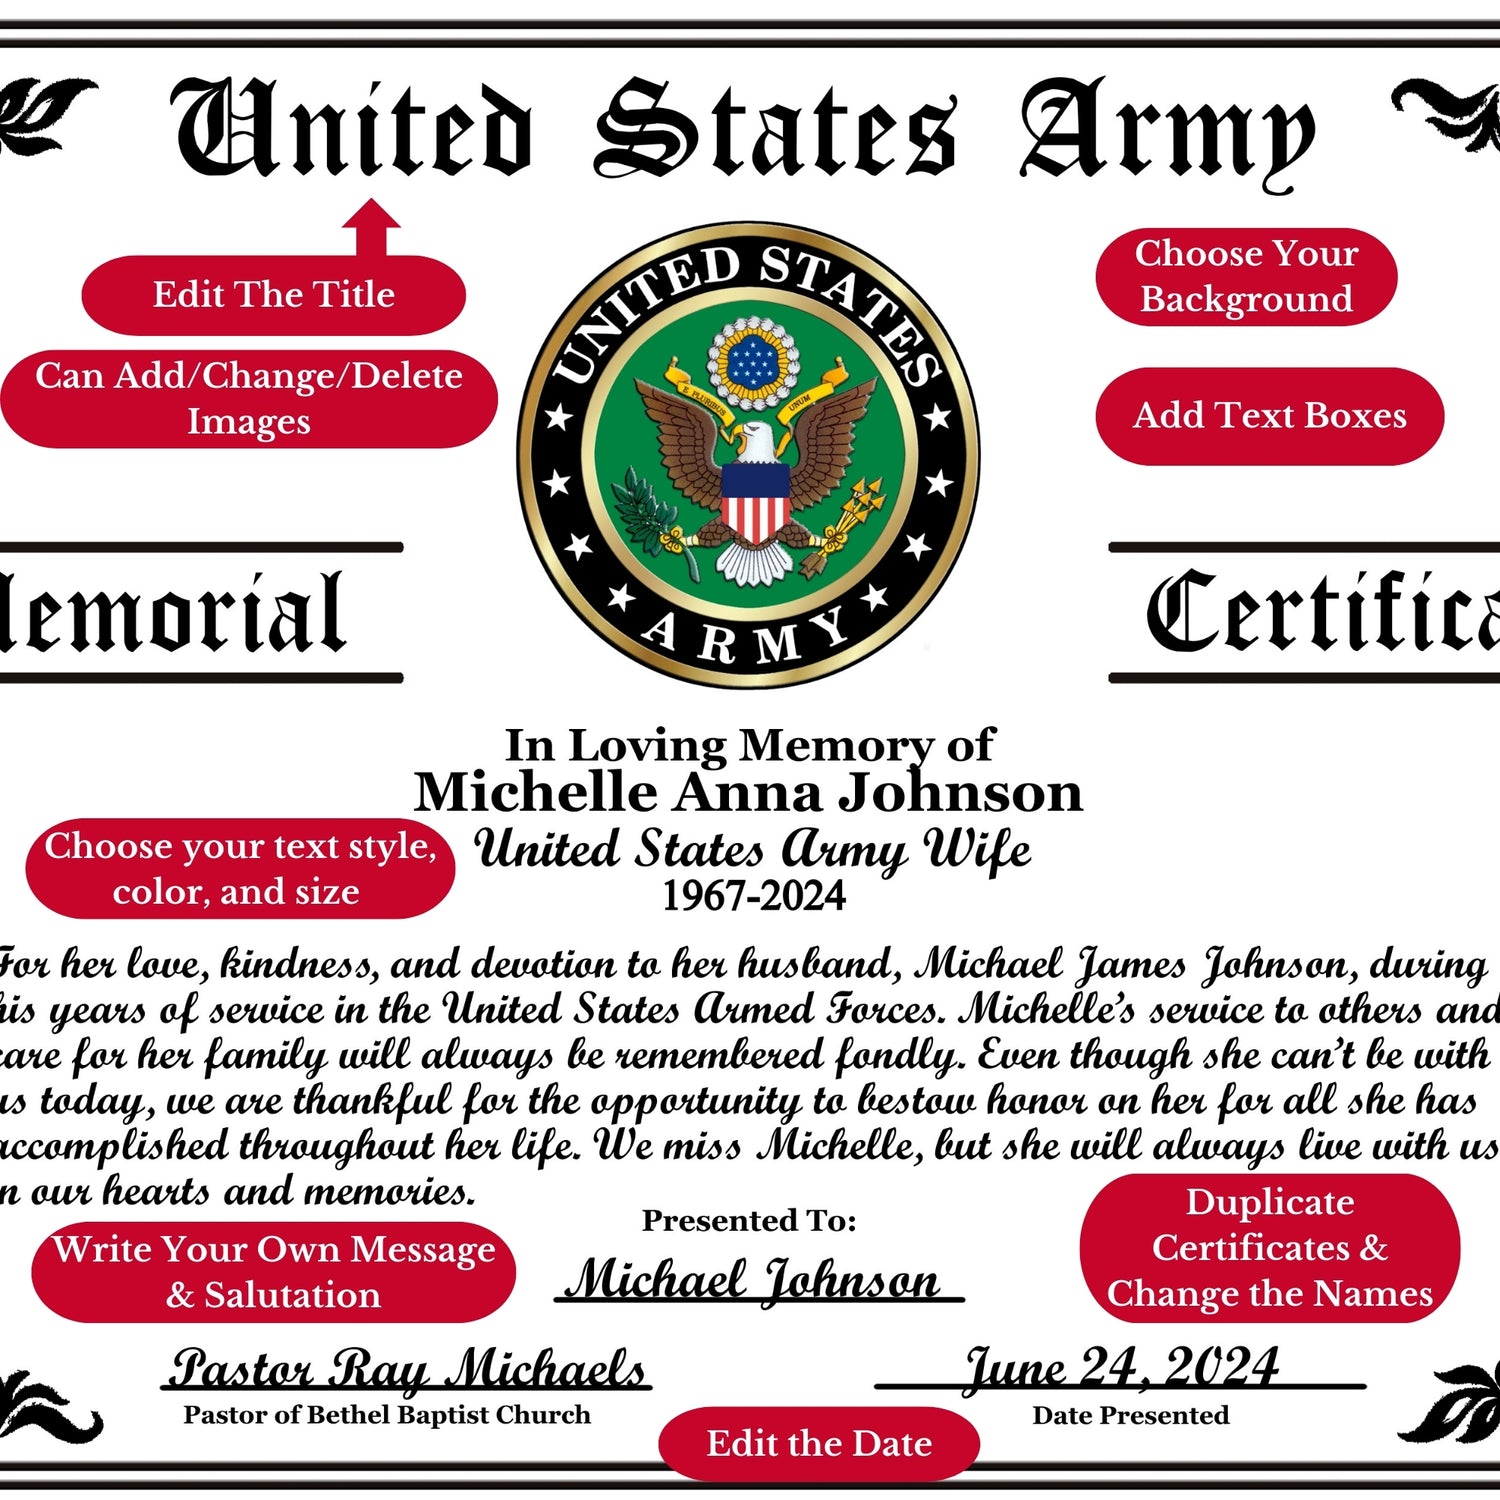 Personalized Military Veteran Memorial Certificates Editing Text